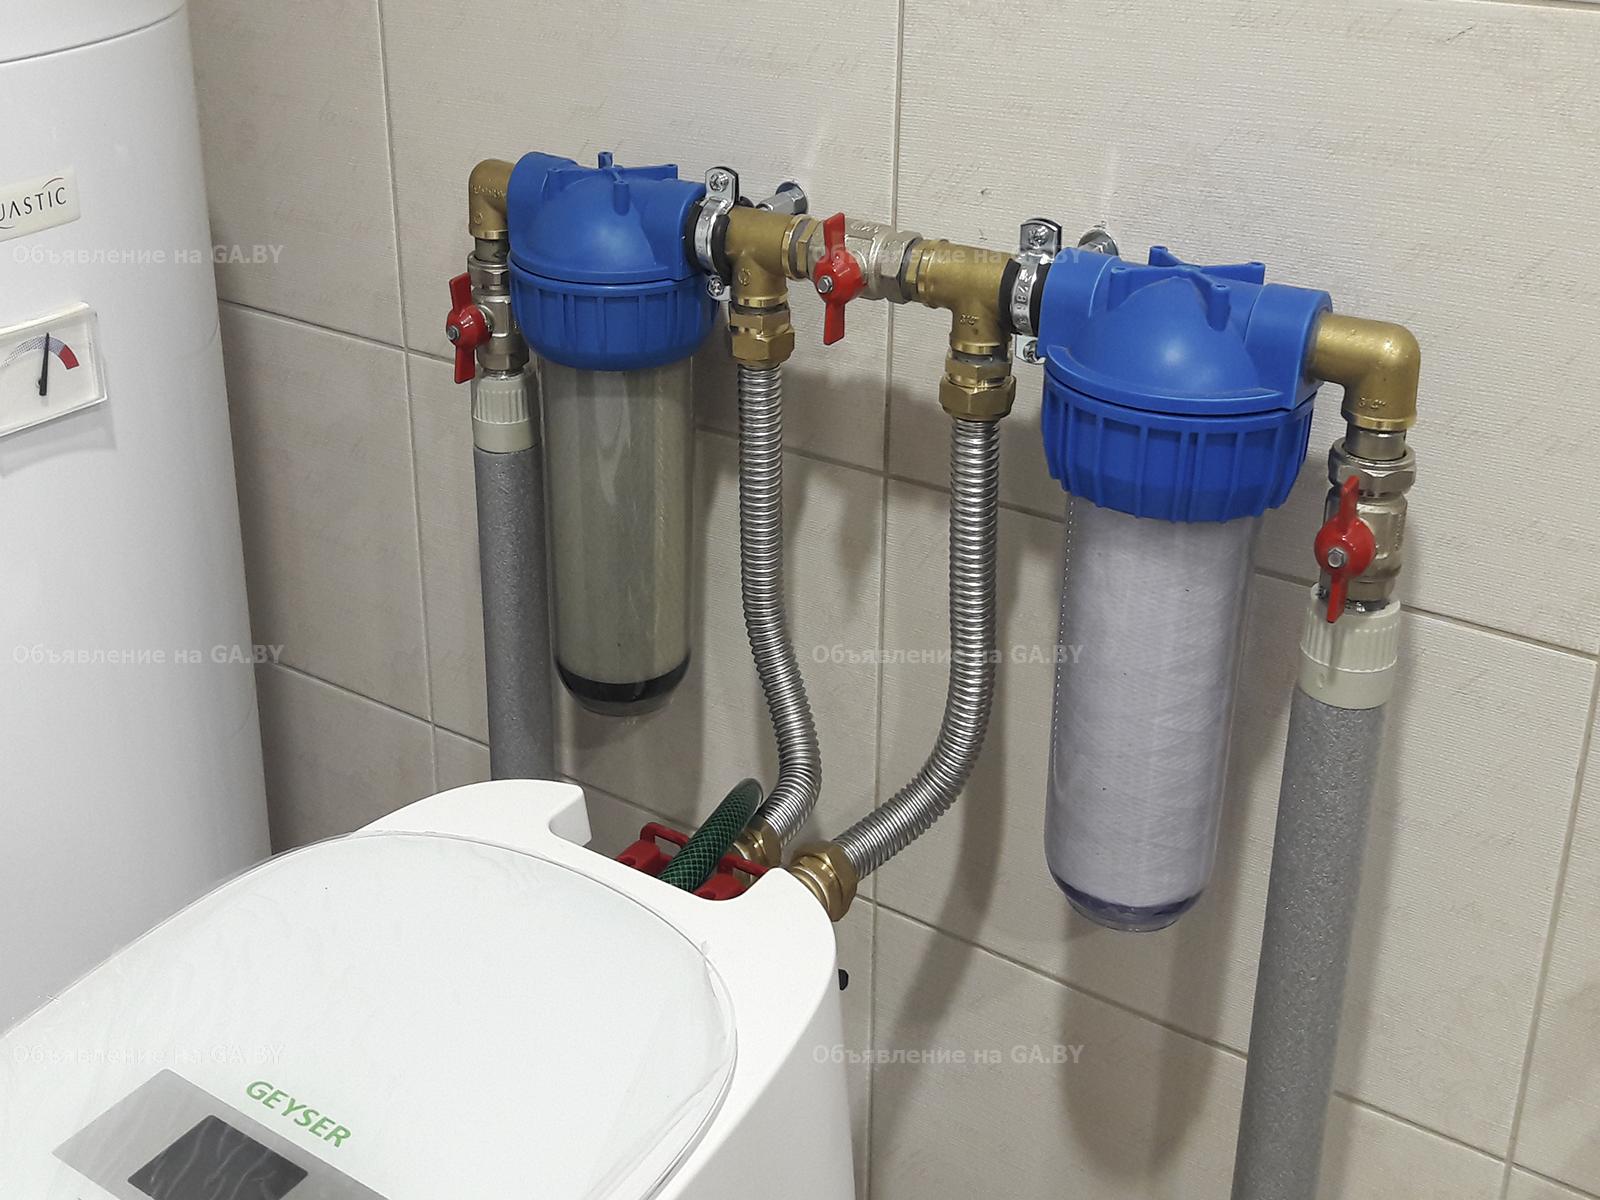 Выполню Водоподготовка и водоочистка, анализ воды - GA.BY